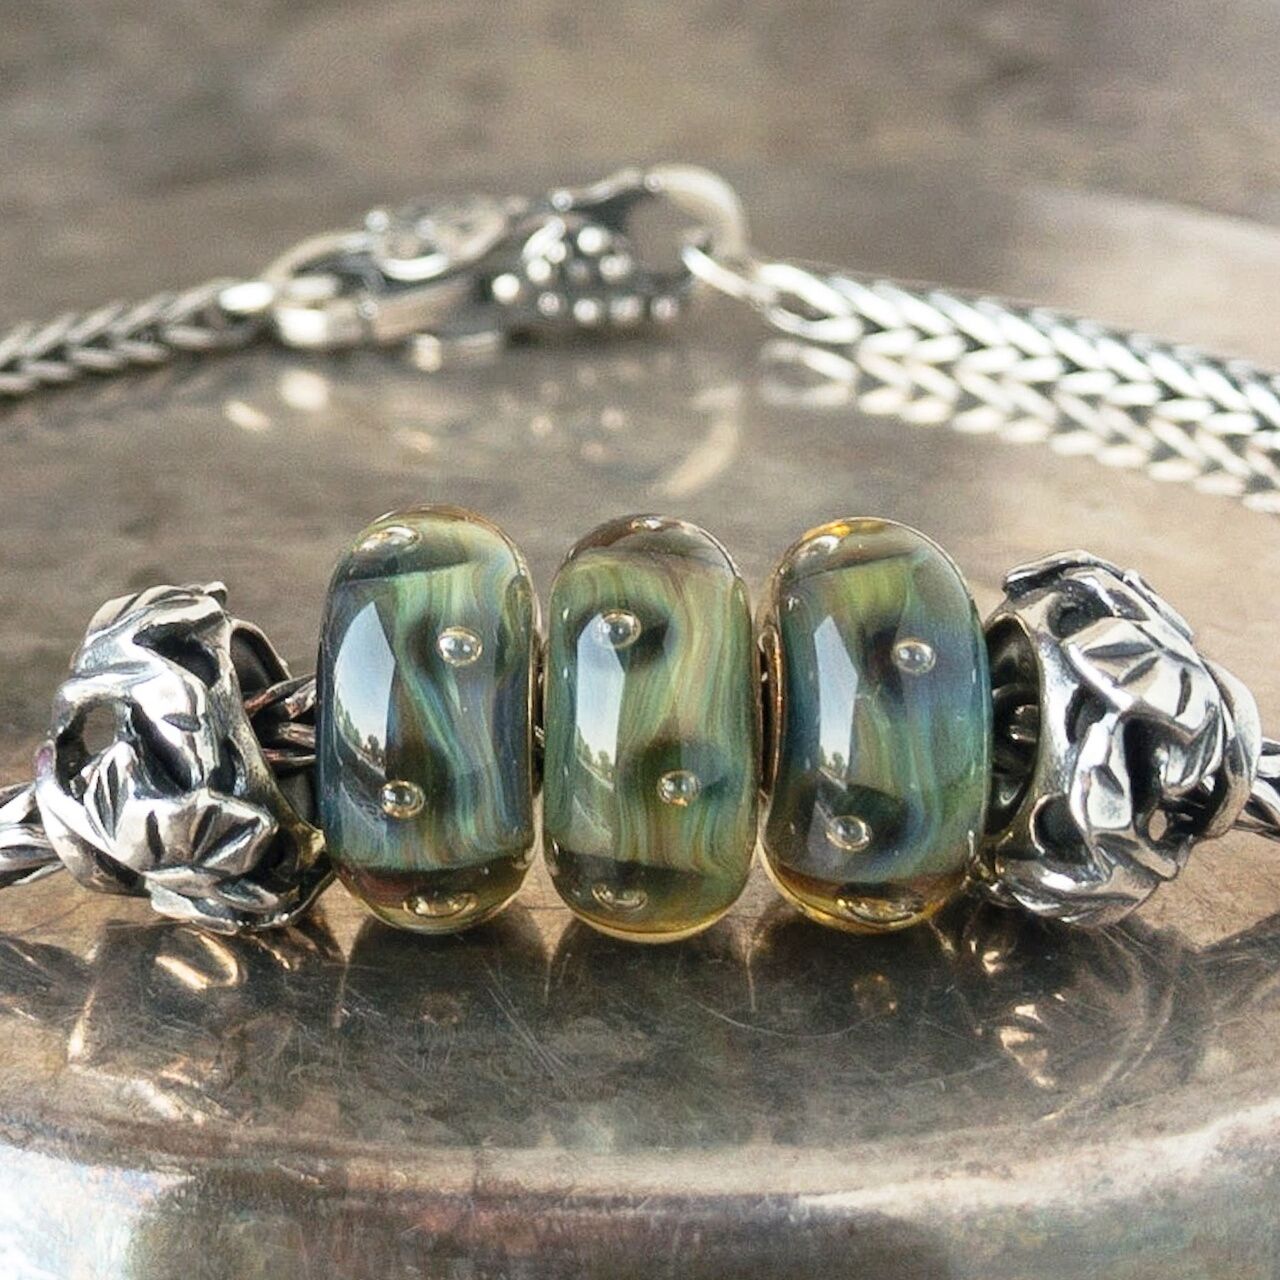 3 versions of Trollbeads glass bead "Organic Bubbles" on a Trollbeads sterling bracelet 